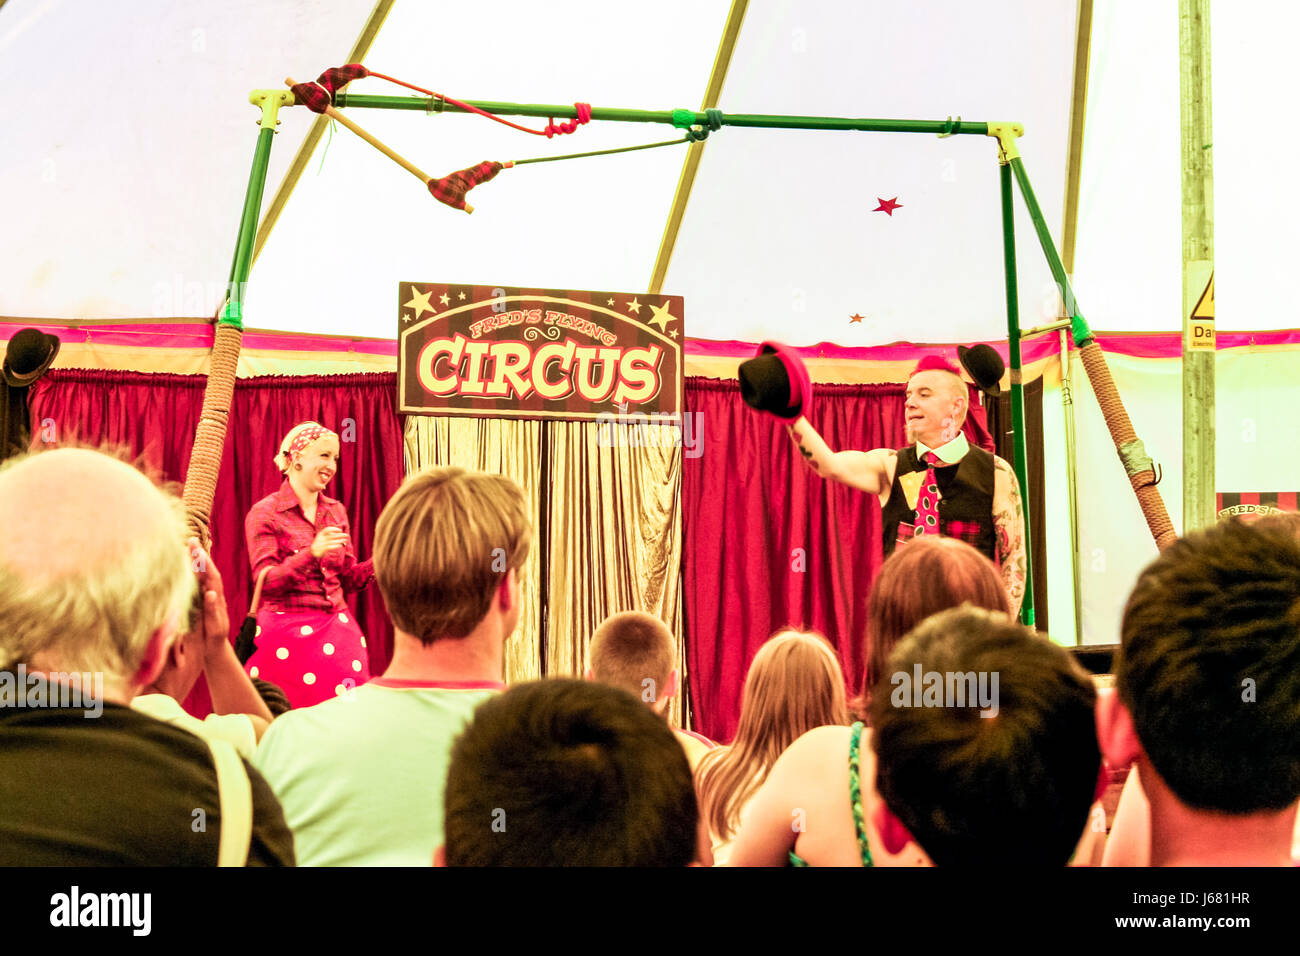 Fred's Flying Circus, Whittington Park, London, UK, July 2007 Stock Photo